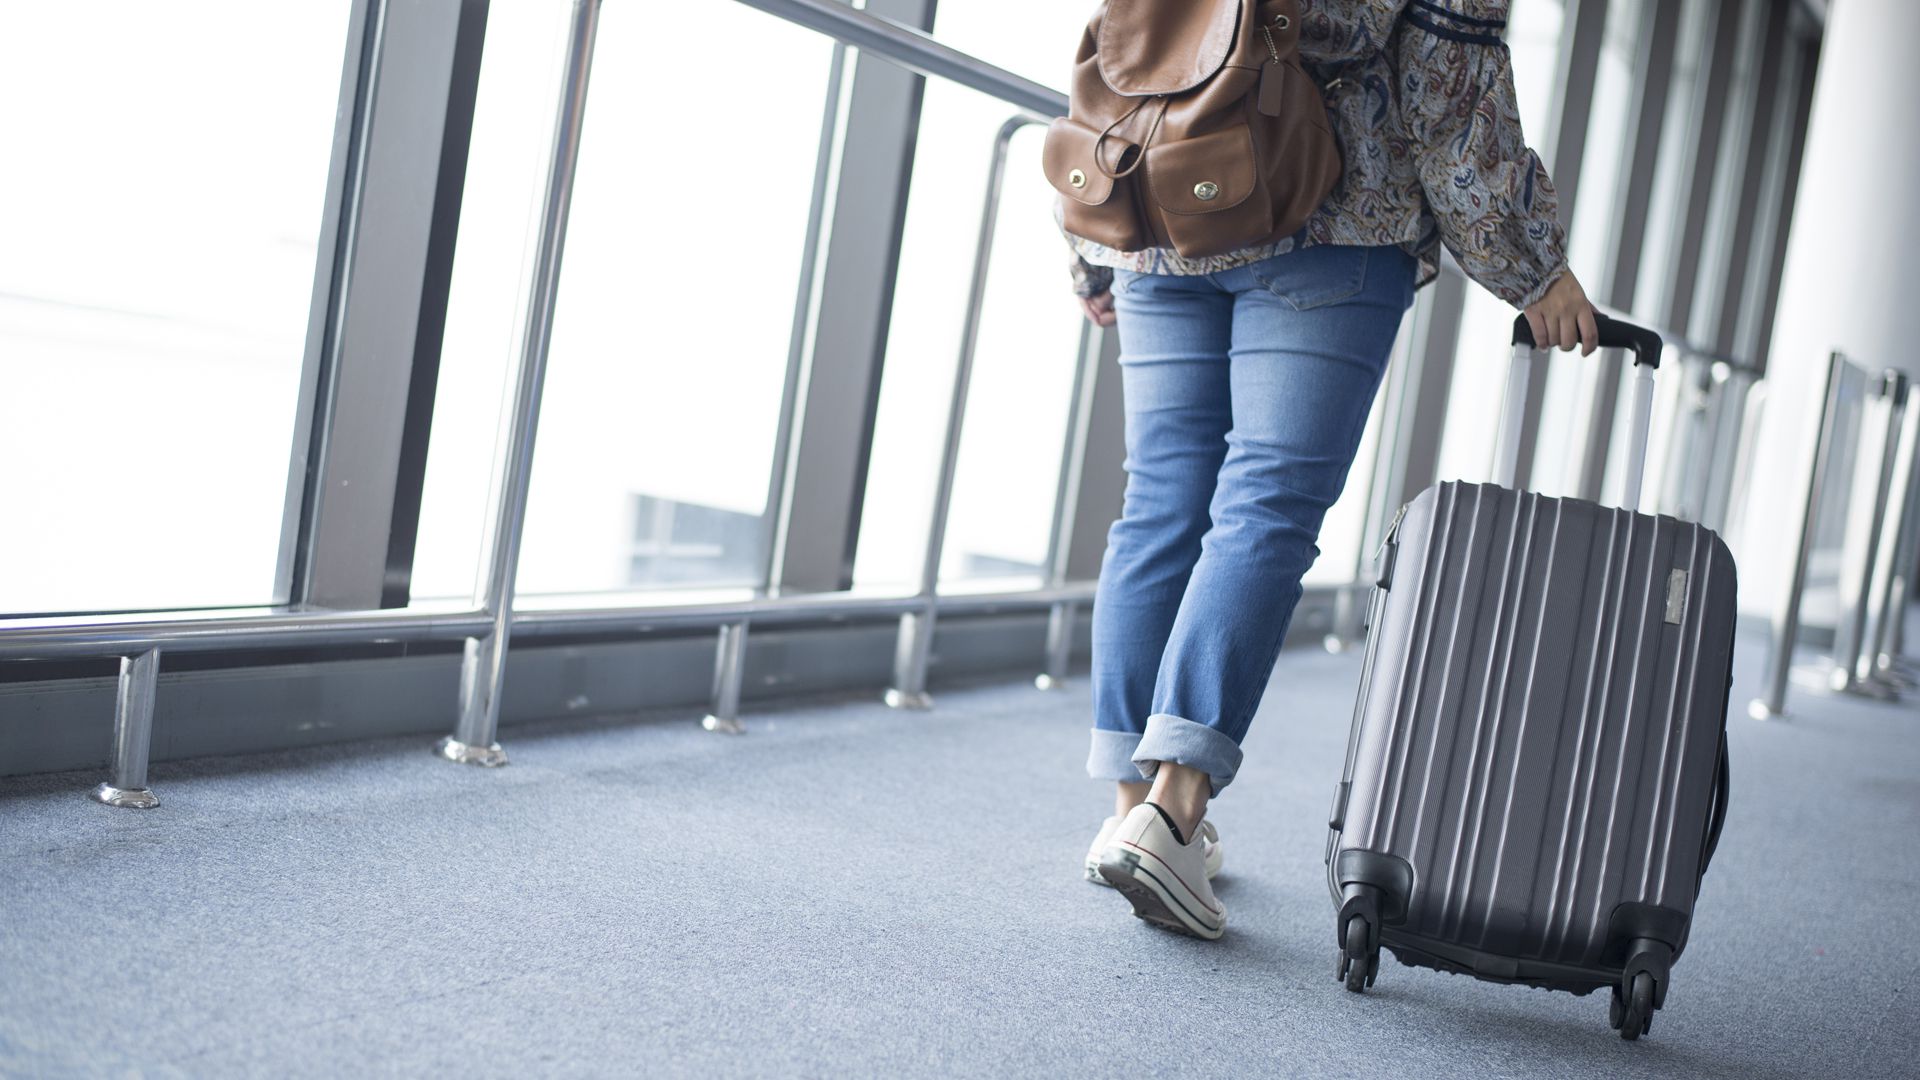 Todo viajero tiene que conocer qué elementos le podrían traer problemas si los incluye en su equipaje de mano